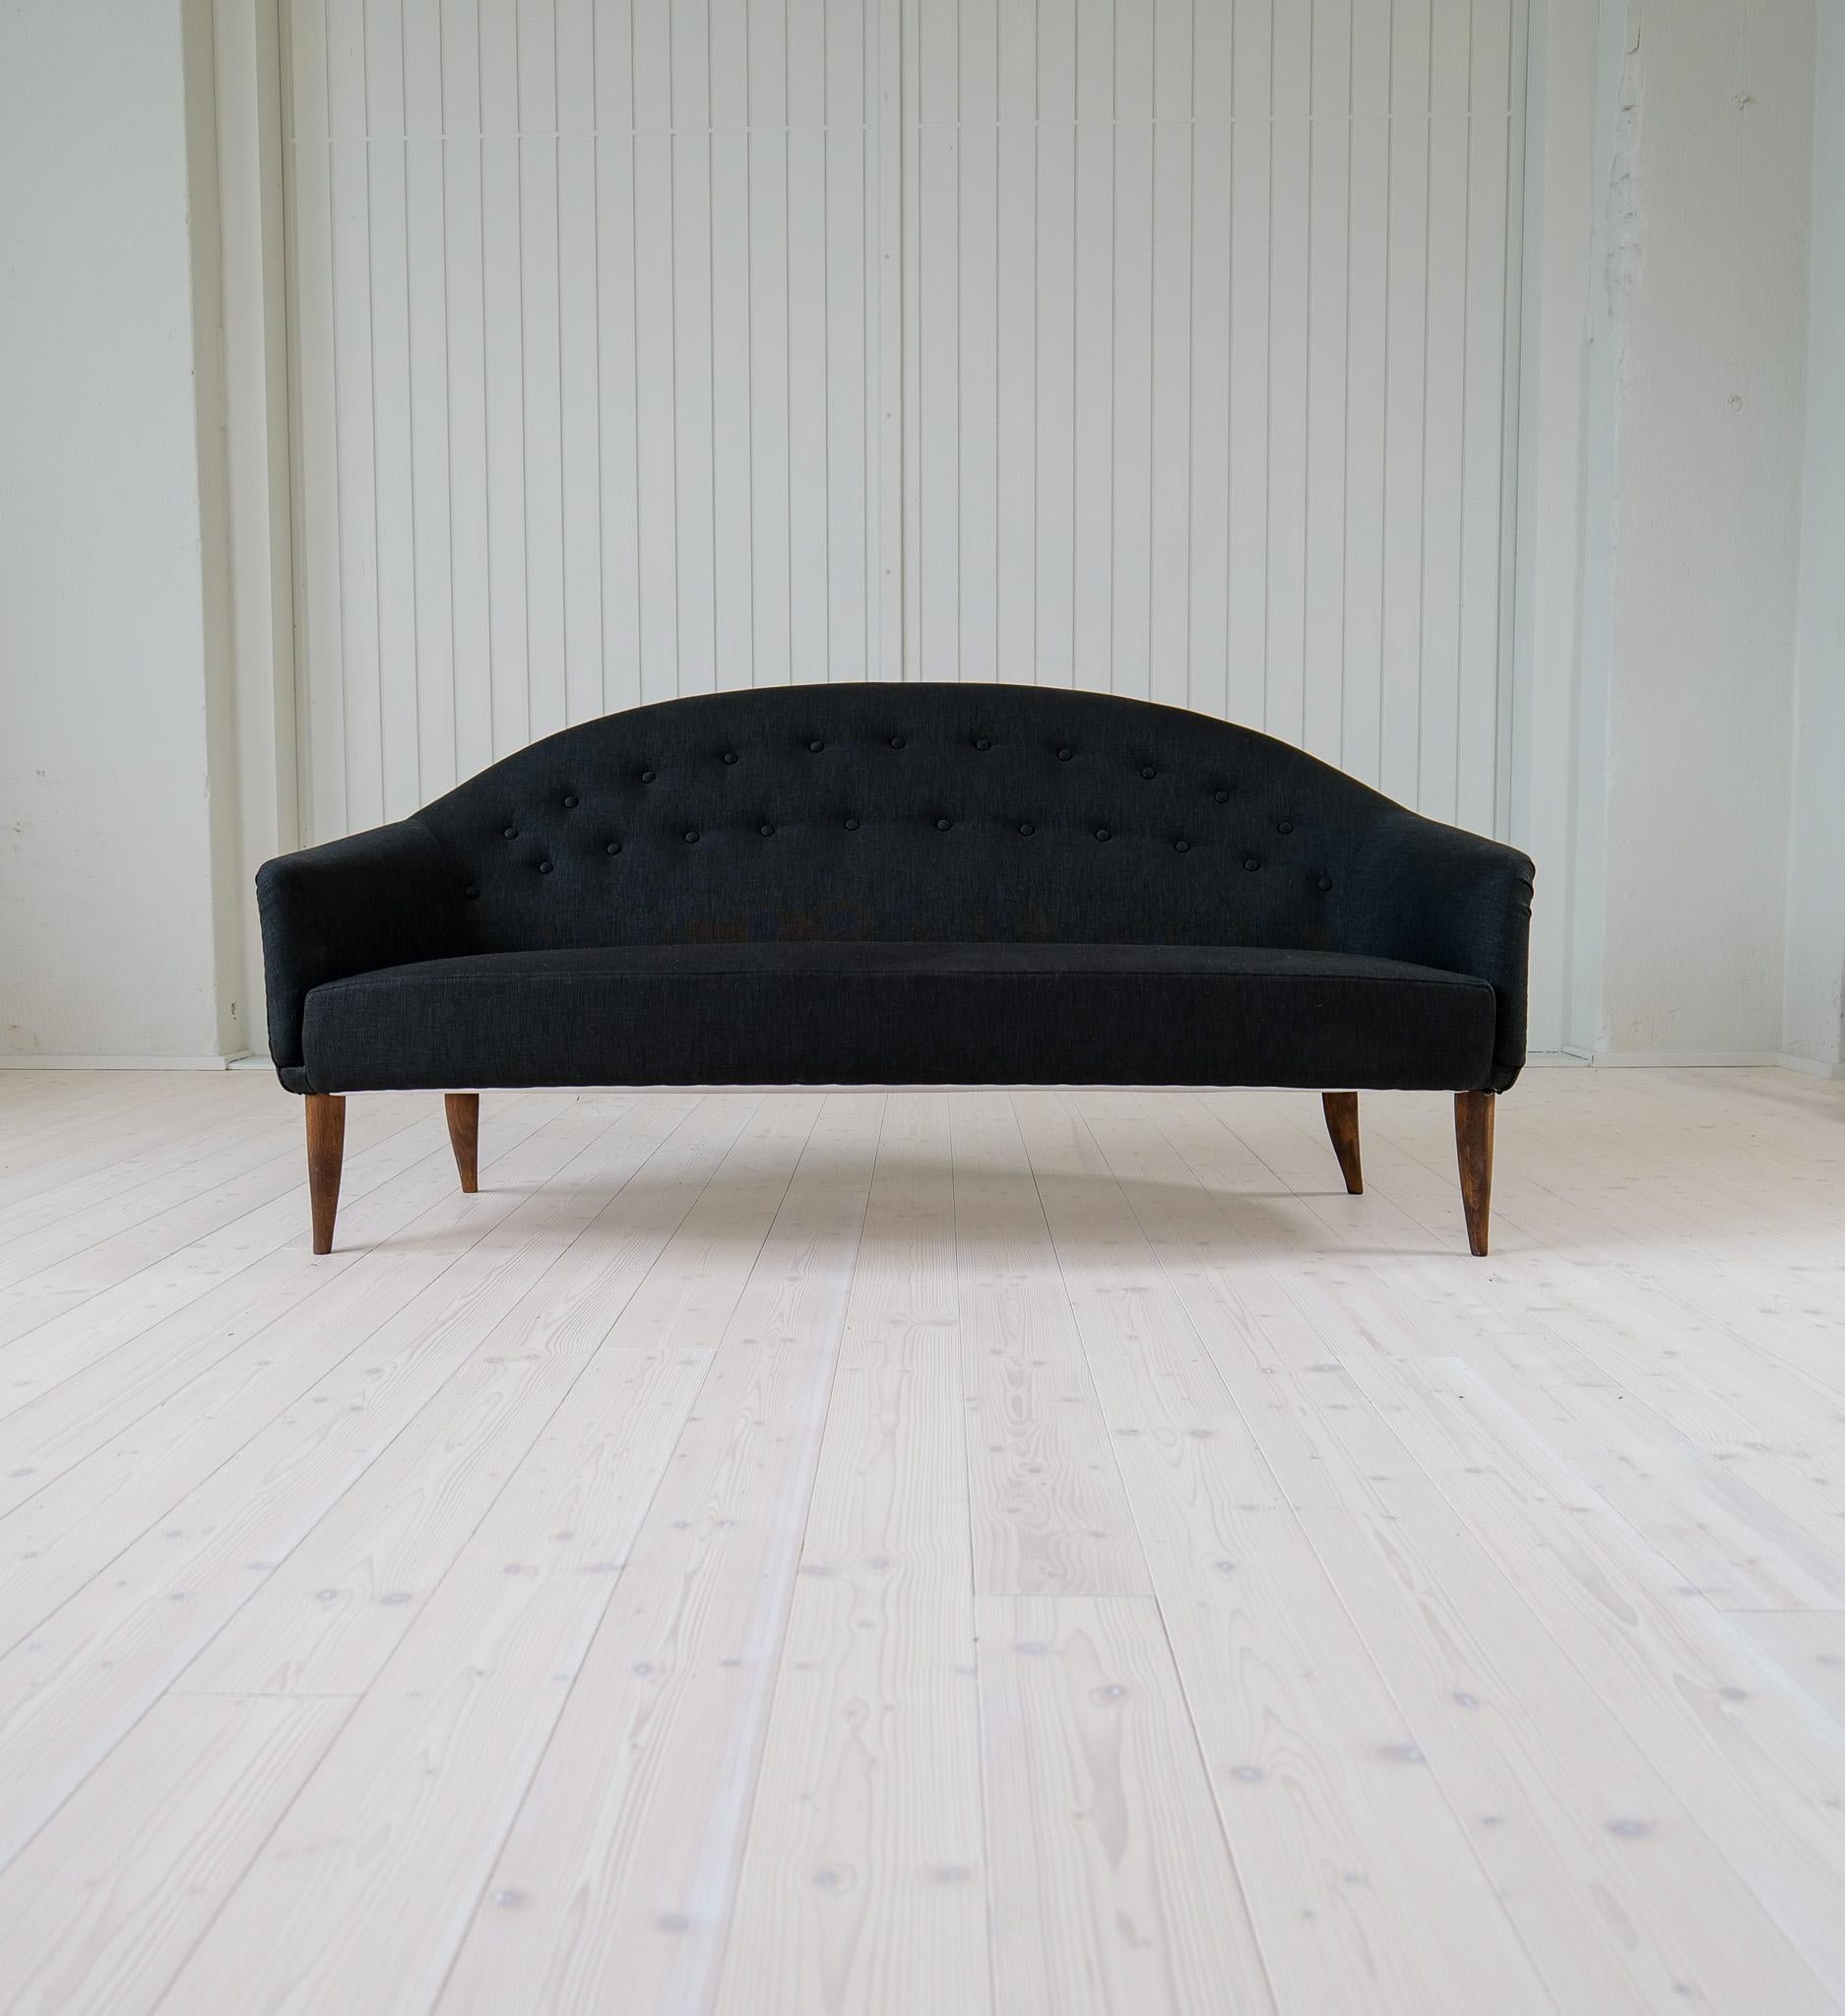 Dieses dreisitzige Sofa mit eleganten und sinnlichen Formen trägt den Namen 